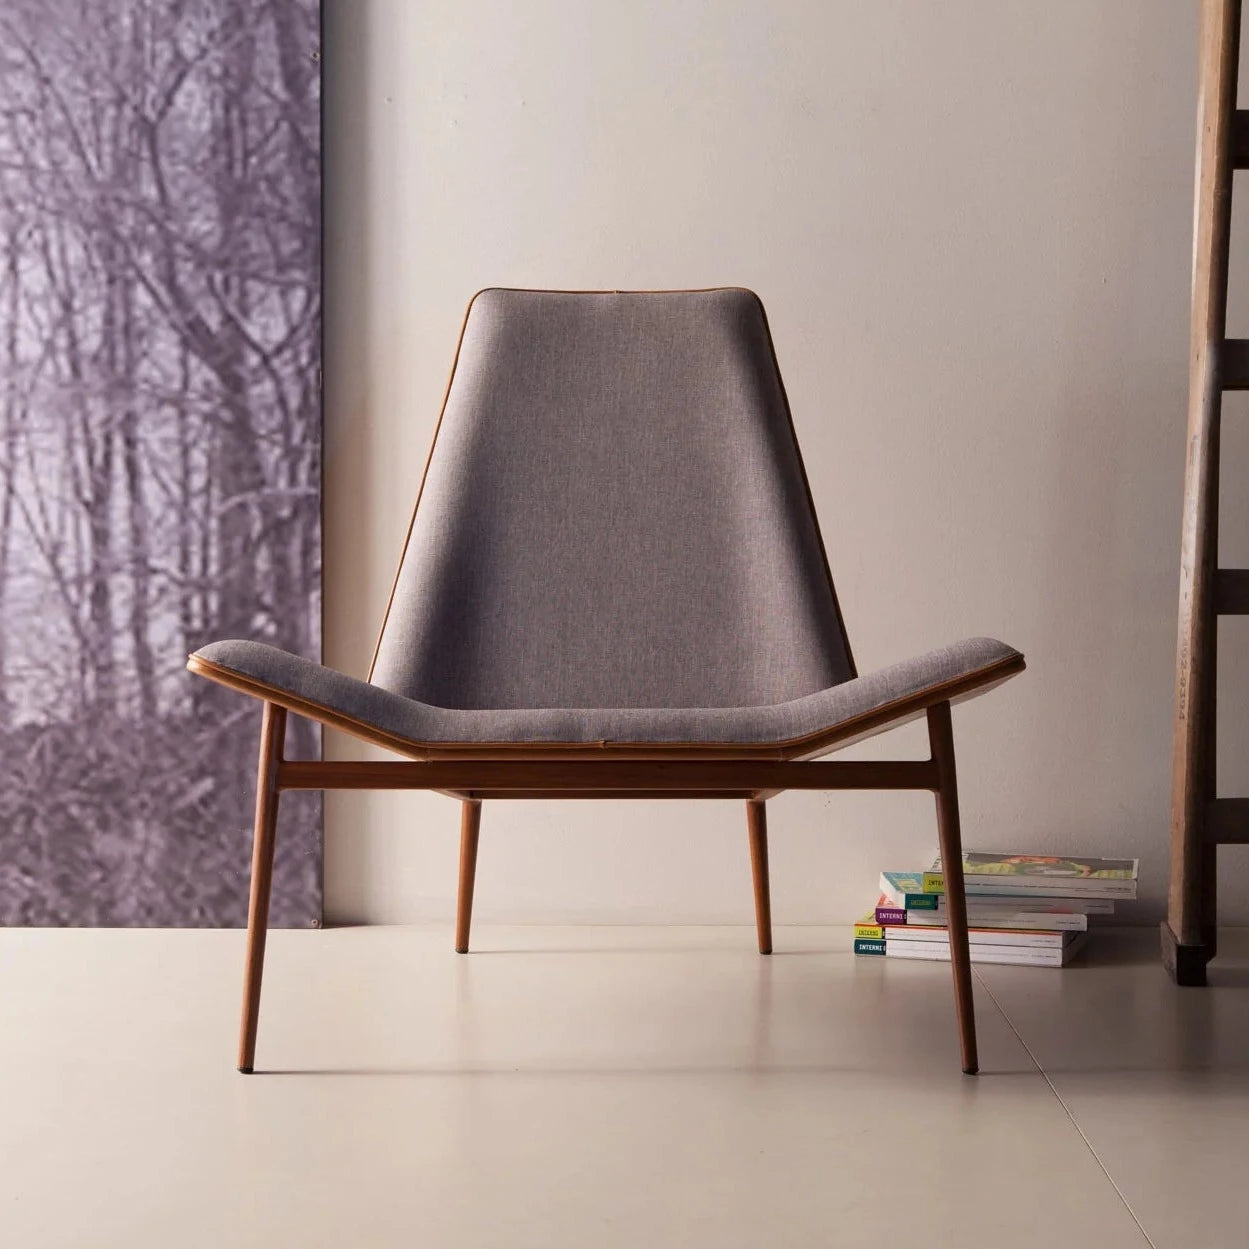 اشتري الان كرسي مفرد بتصميم خشبي مميز مودرن اونلاين | بيوت